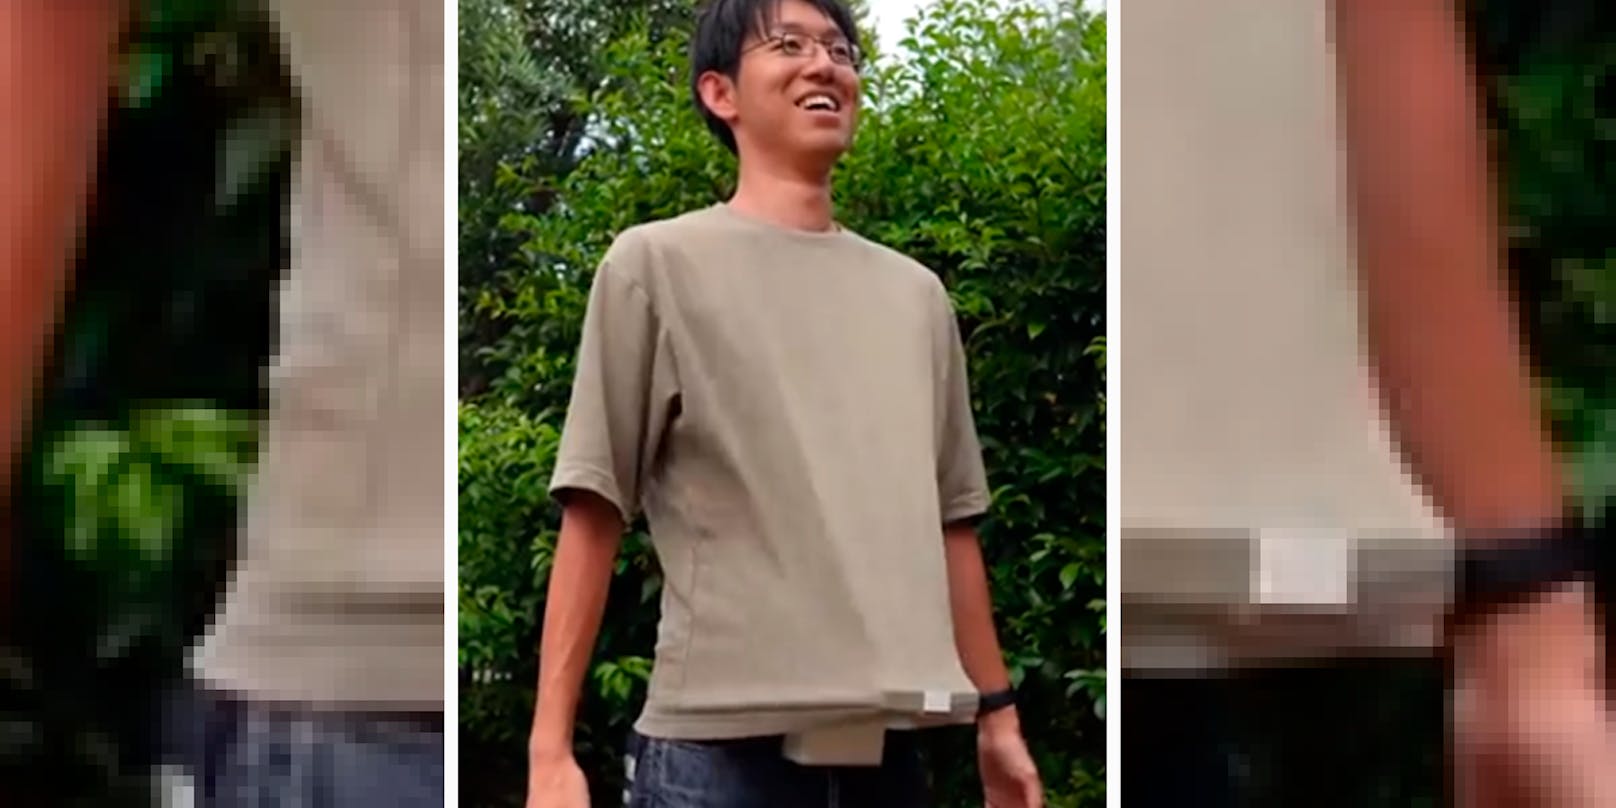 Der "T-Shirt-Lüfter" oder "Bauch-Ventilator" von Erfinder Kazuya Shibata bekommt im Netz heftigen Gegenwind.